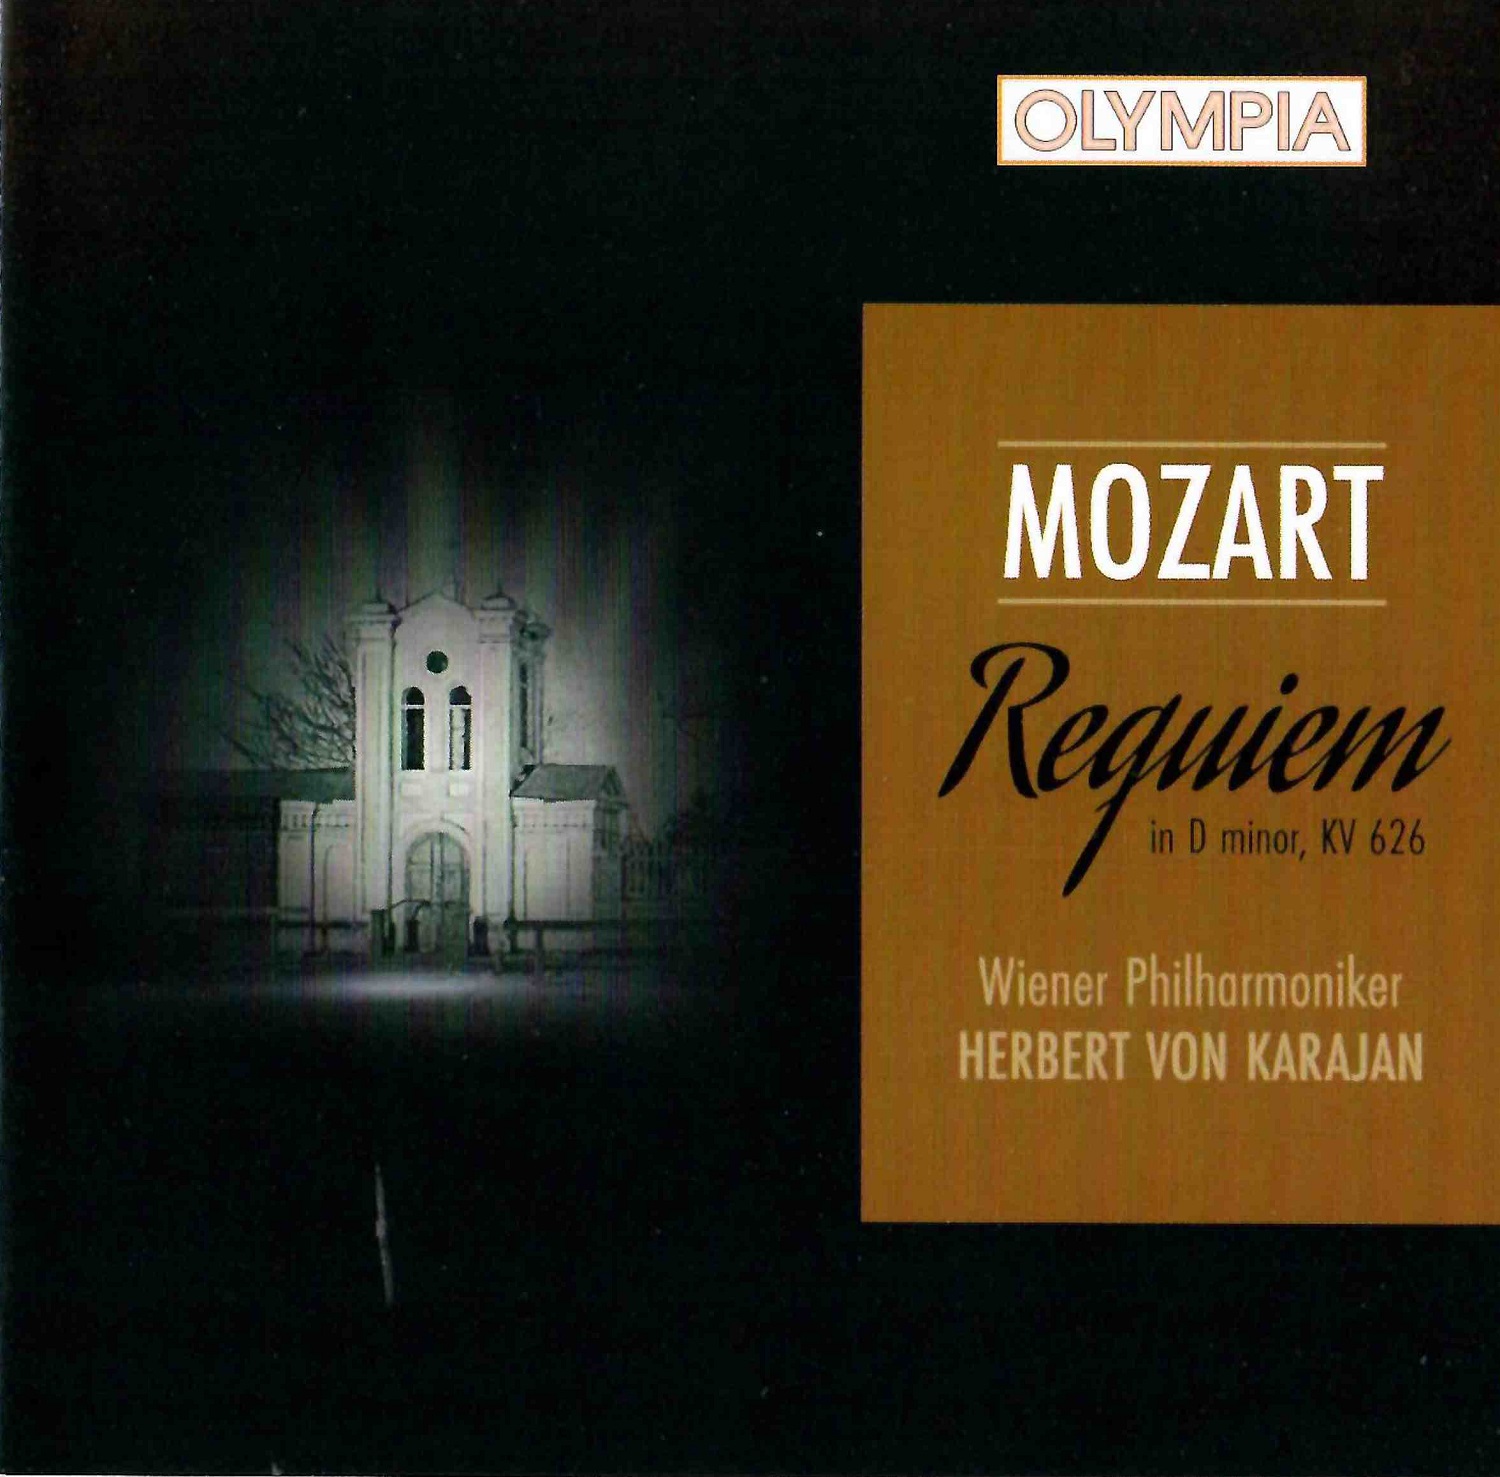 фото Герберт фон караян - моцарт: реквием международная книга - музыка